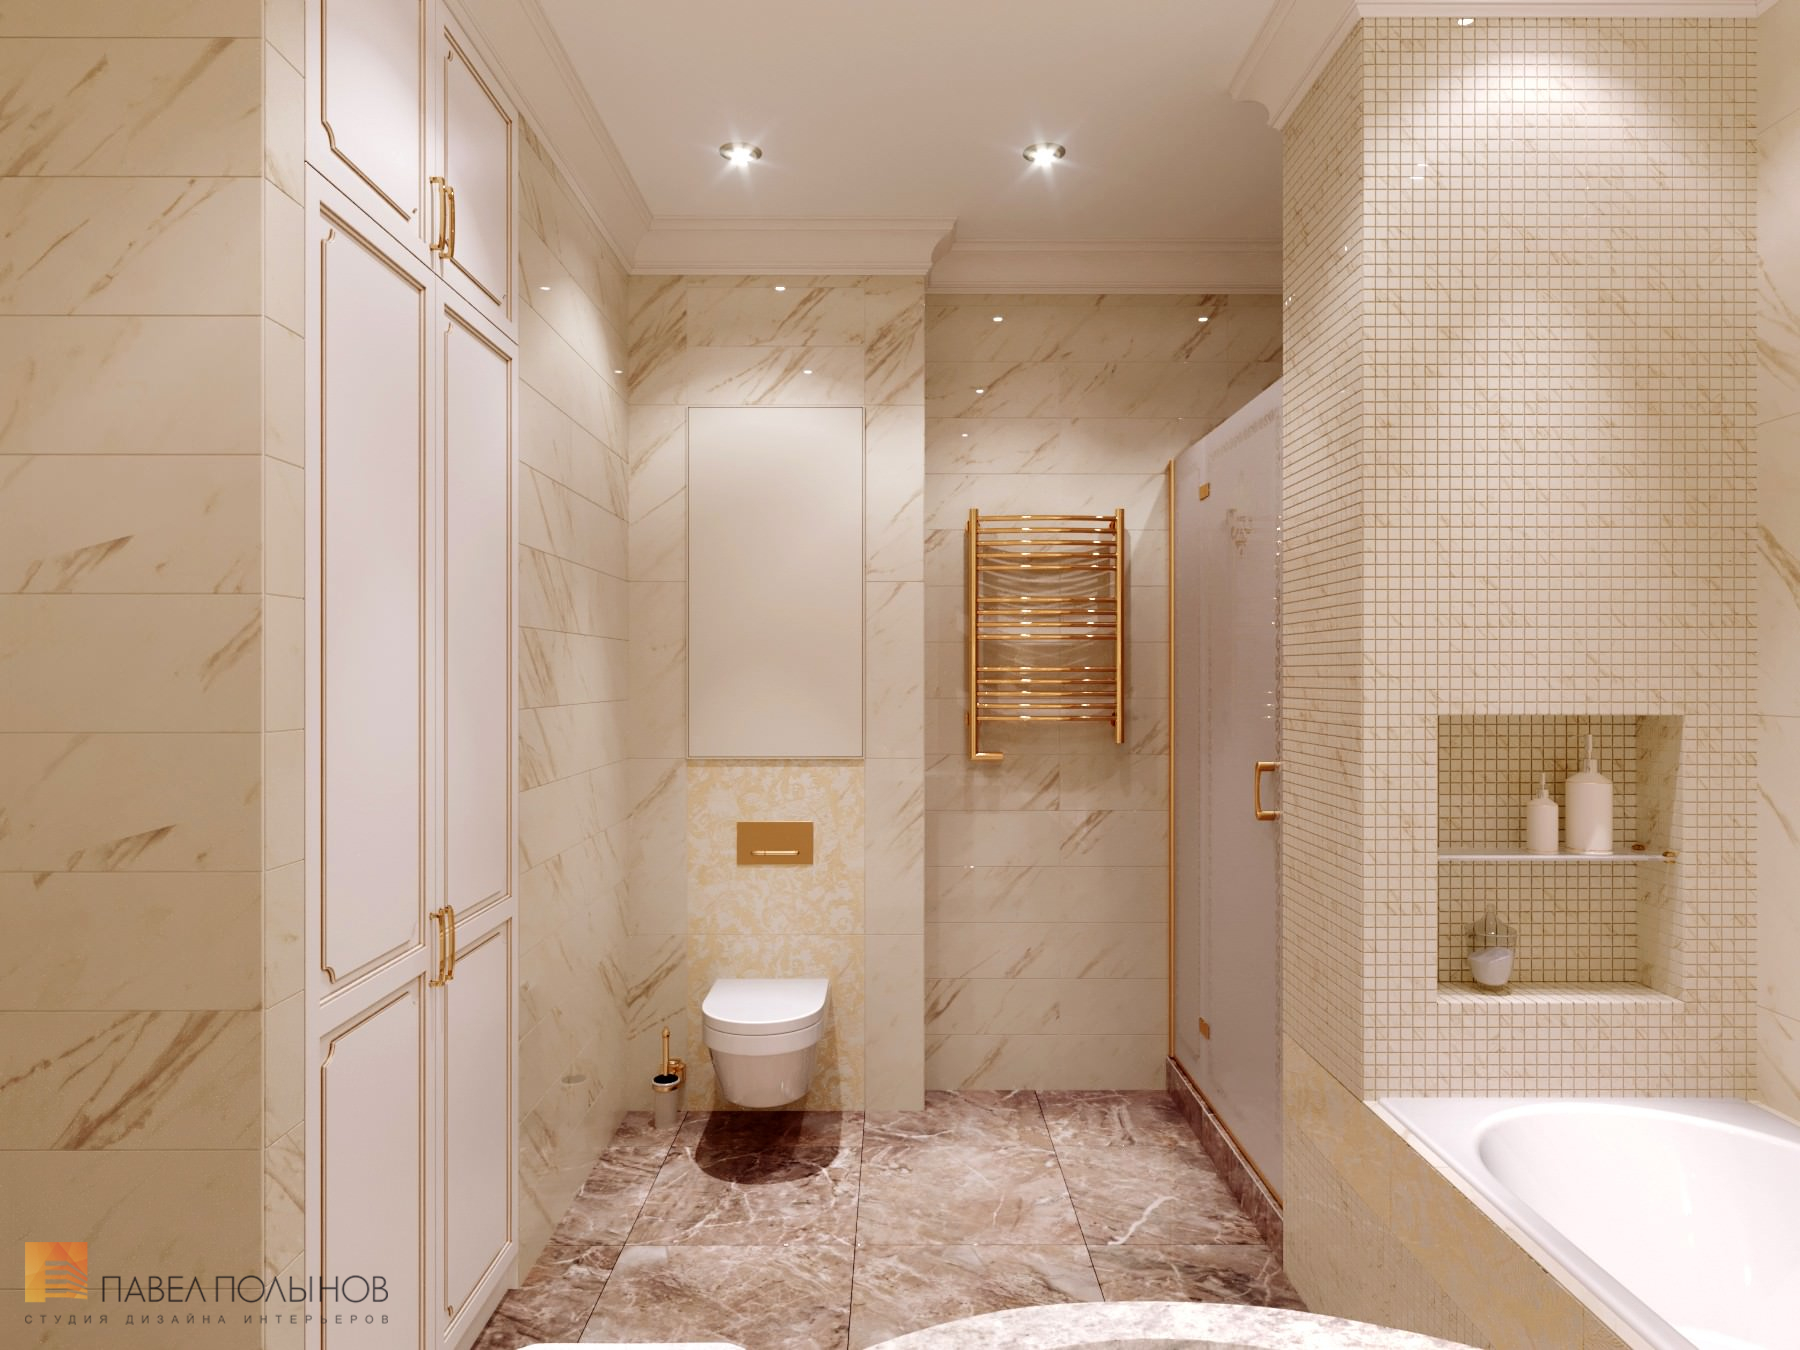 Фото дизайн интерьера ванной комнаты из проекта «Квартира в классическом стиле в ЖК «Русский дом», 144 кв.м.»